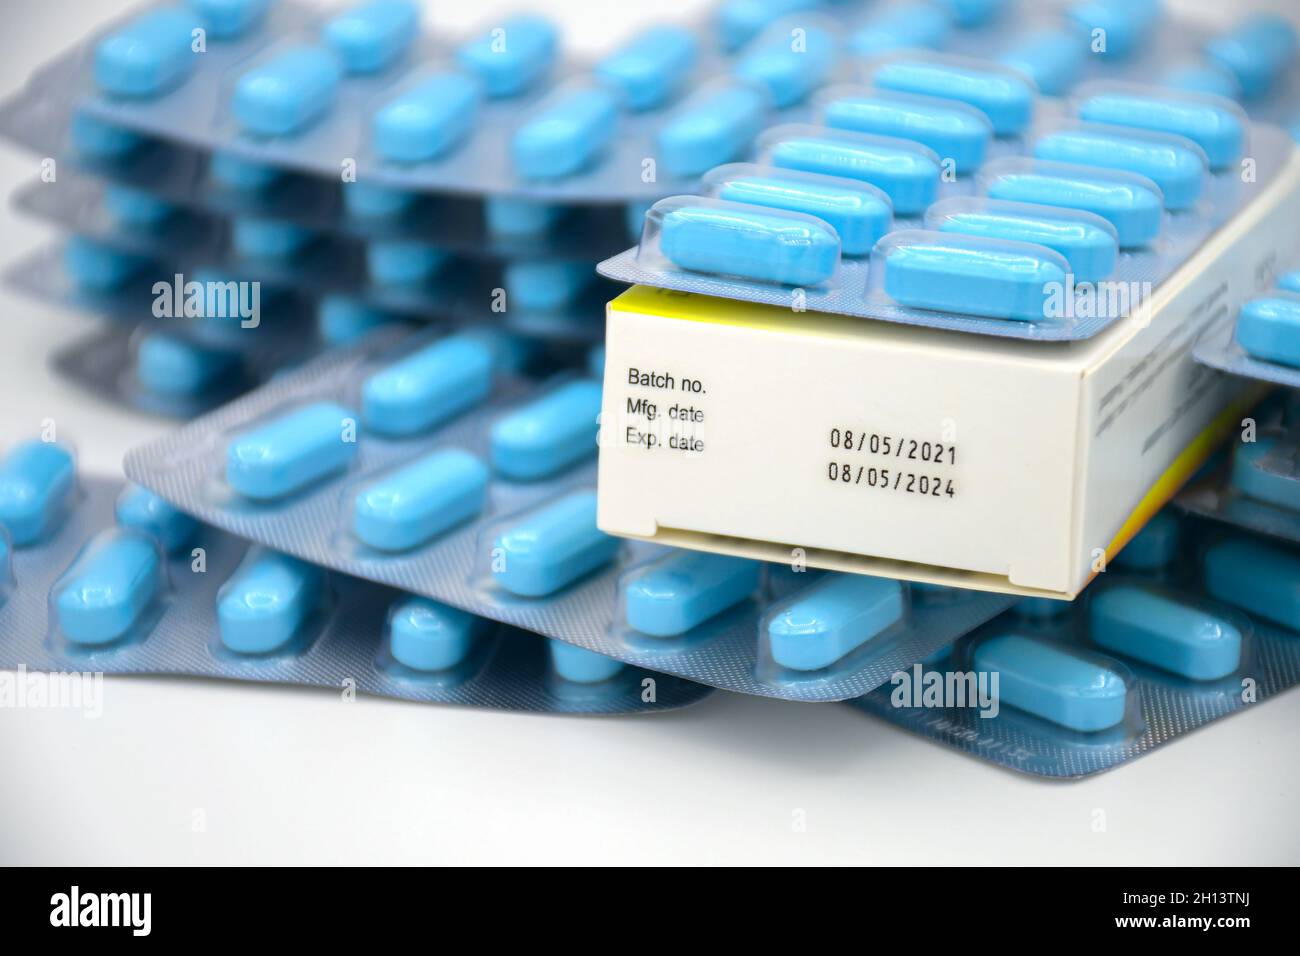 Data di produzione e la data di scadenza su alcuni packaging farmaceutico. Foto Stock